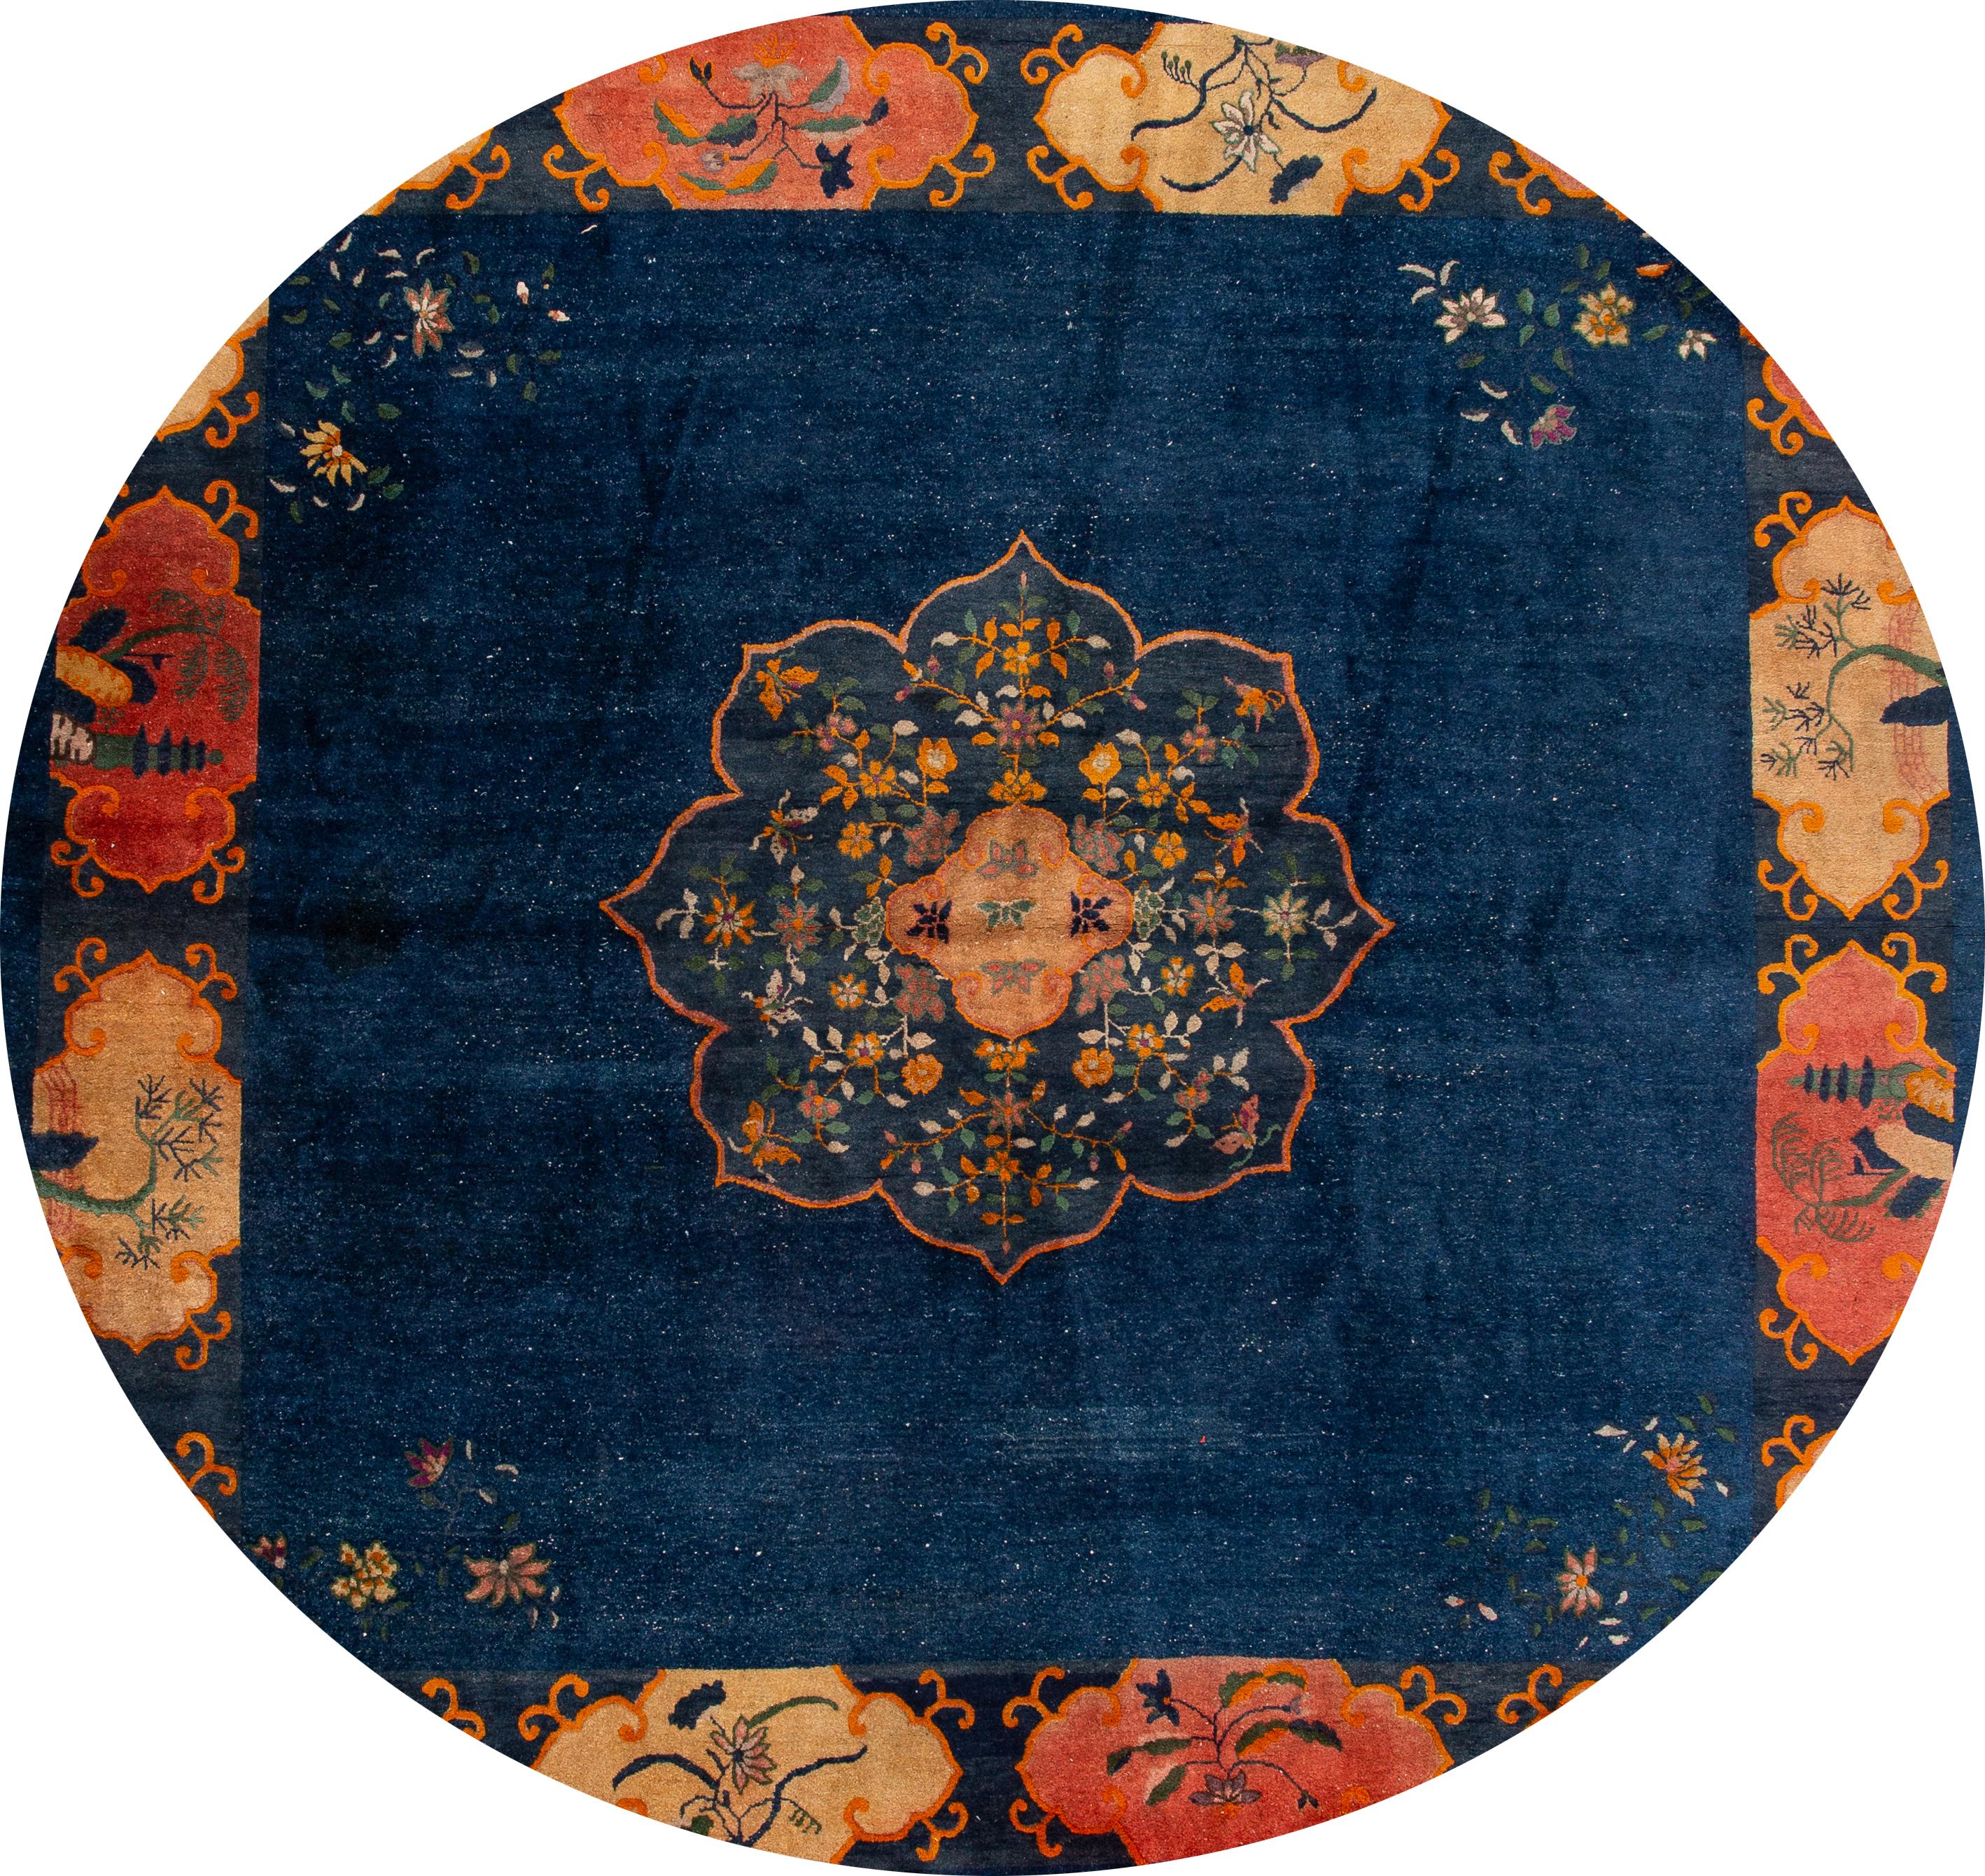 Schöne antike chinesische Art Deco Teppich 13 x 12, handgeknüpft Wolle mit einem dunkelblauen Feld, tan Rahmen und eine Multi-Color-Akzente in einem subtilen all-over Classic Chinese floral design.
Dieser Teppich misst 12'6